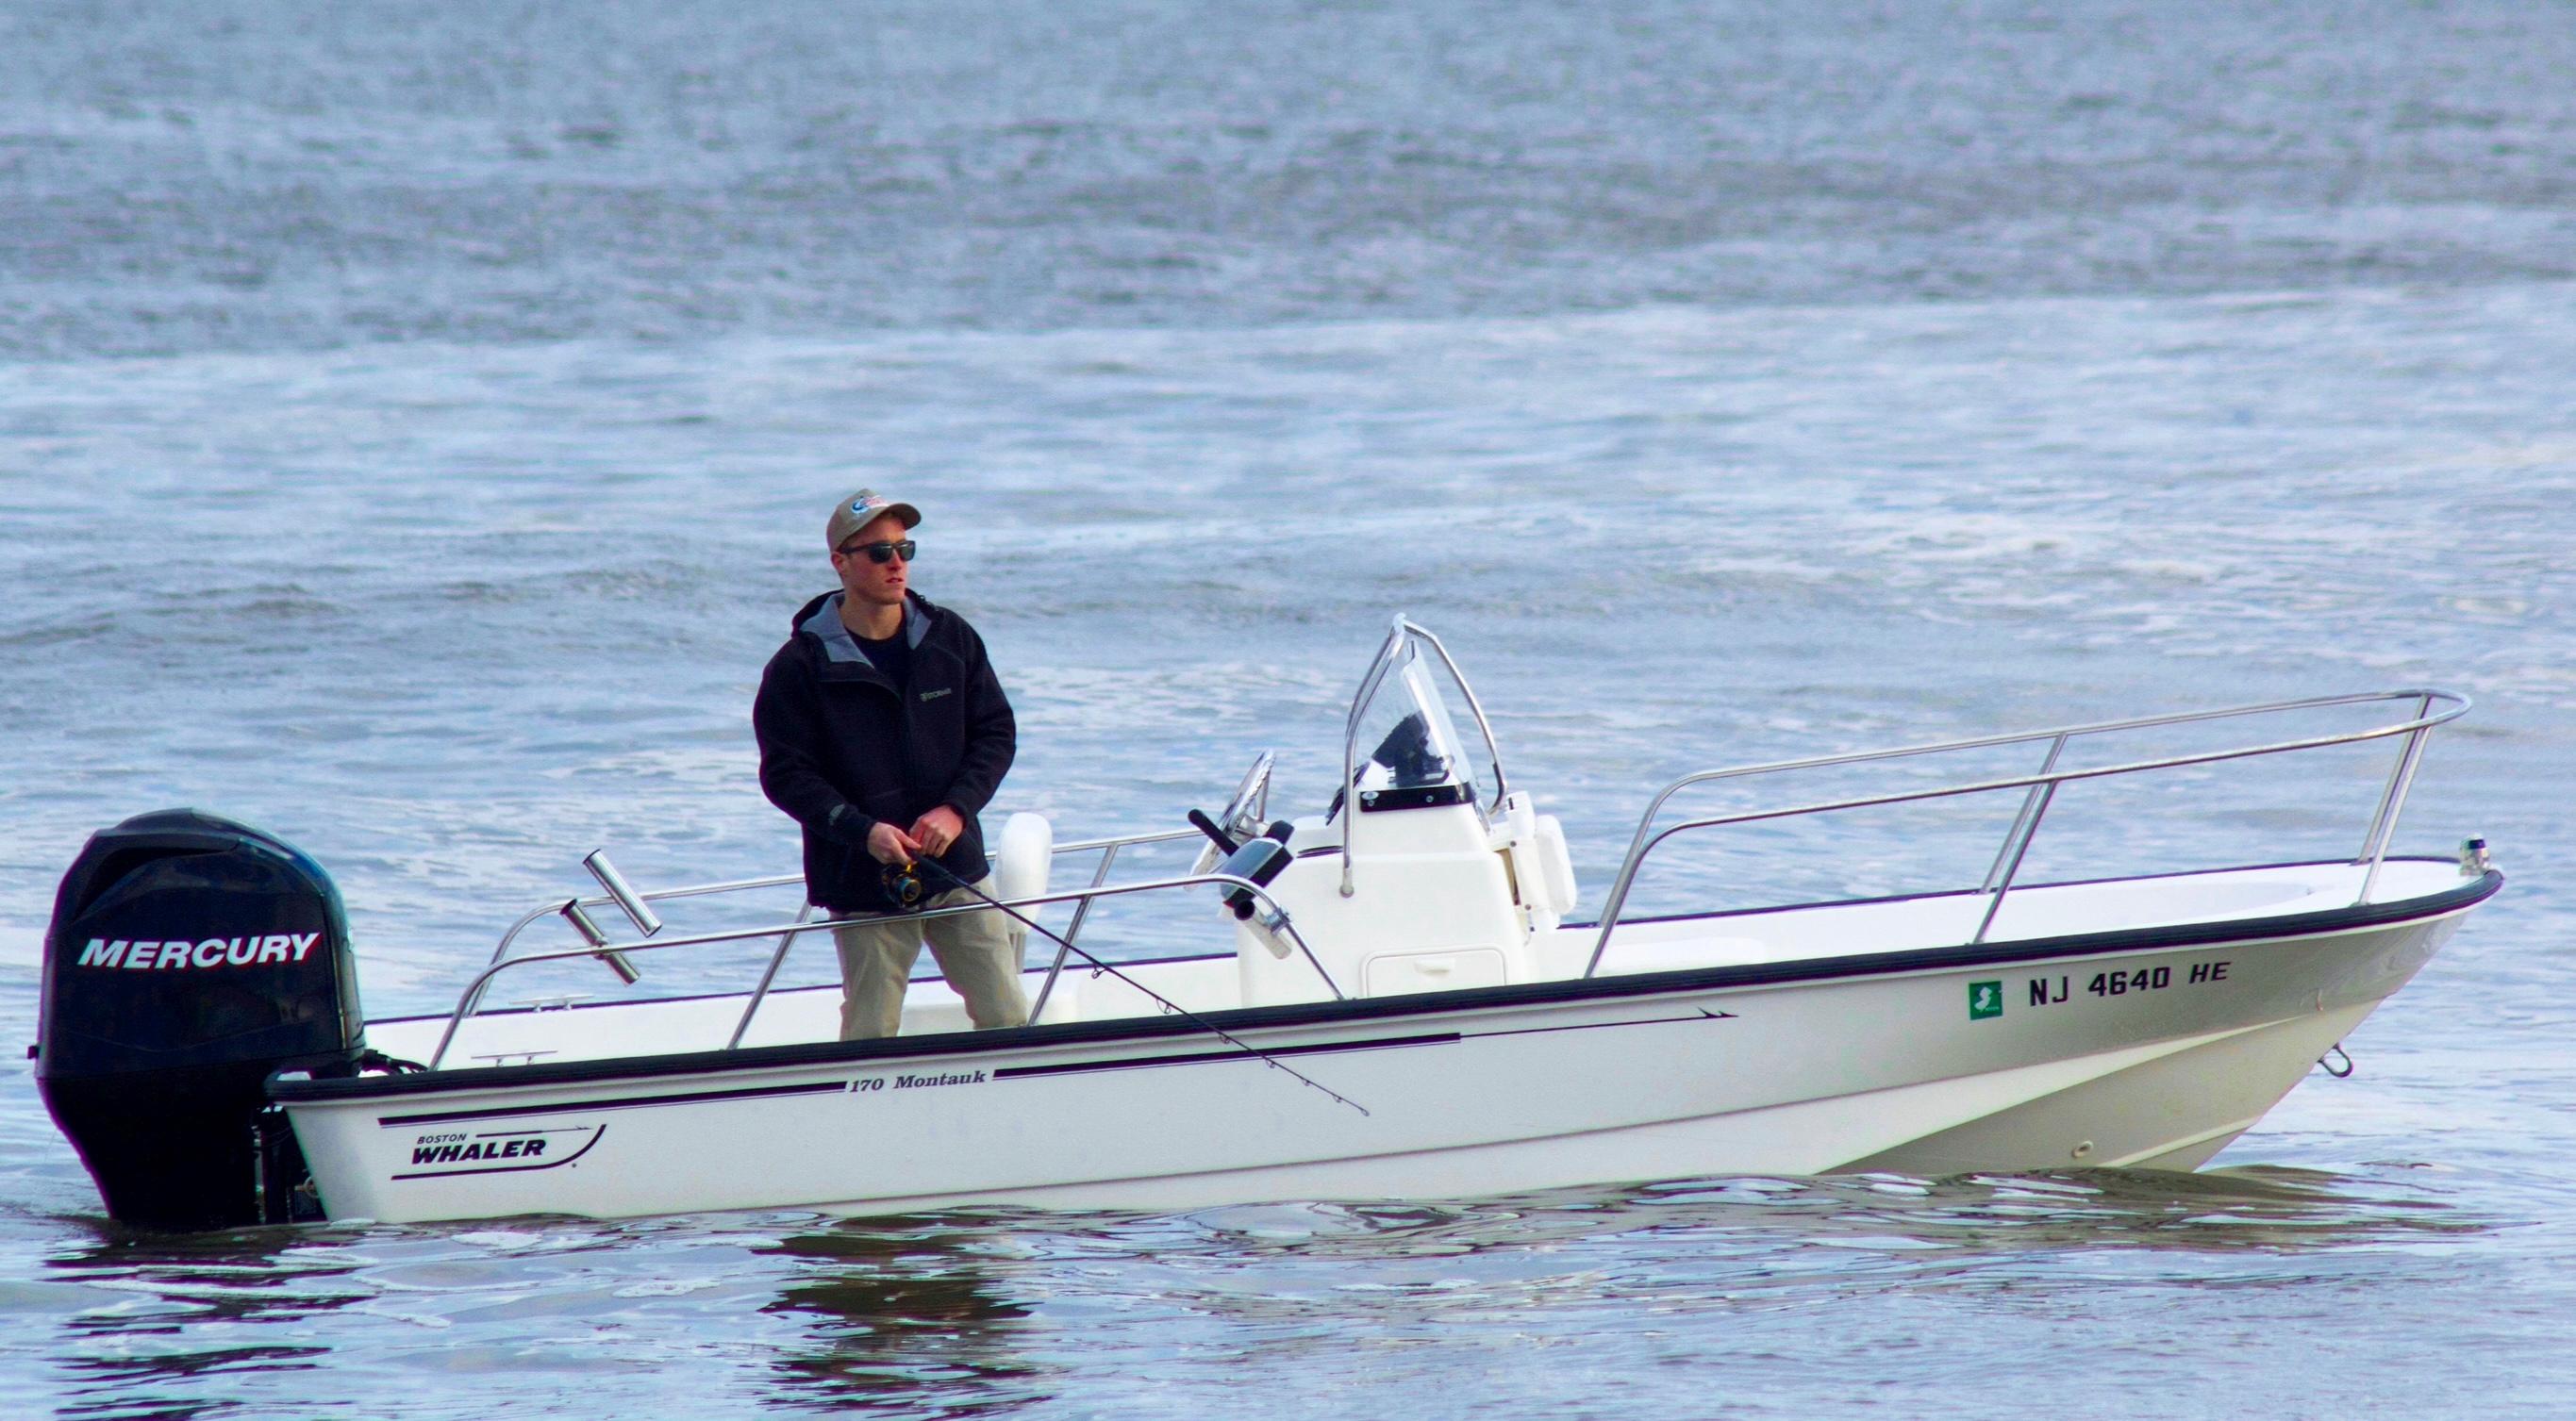 2011 Boston Whaler 170 Montauk